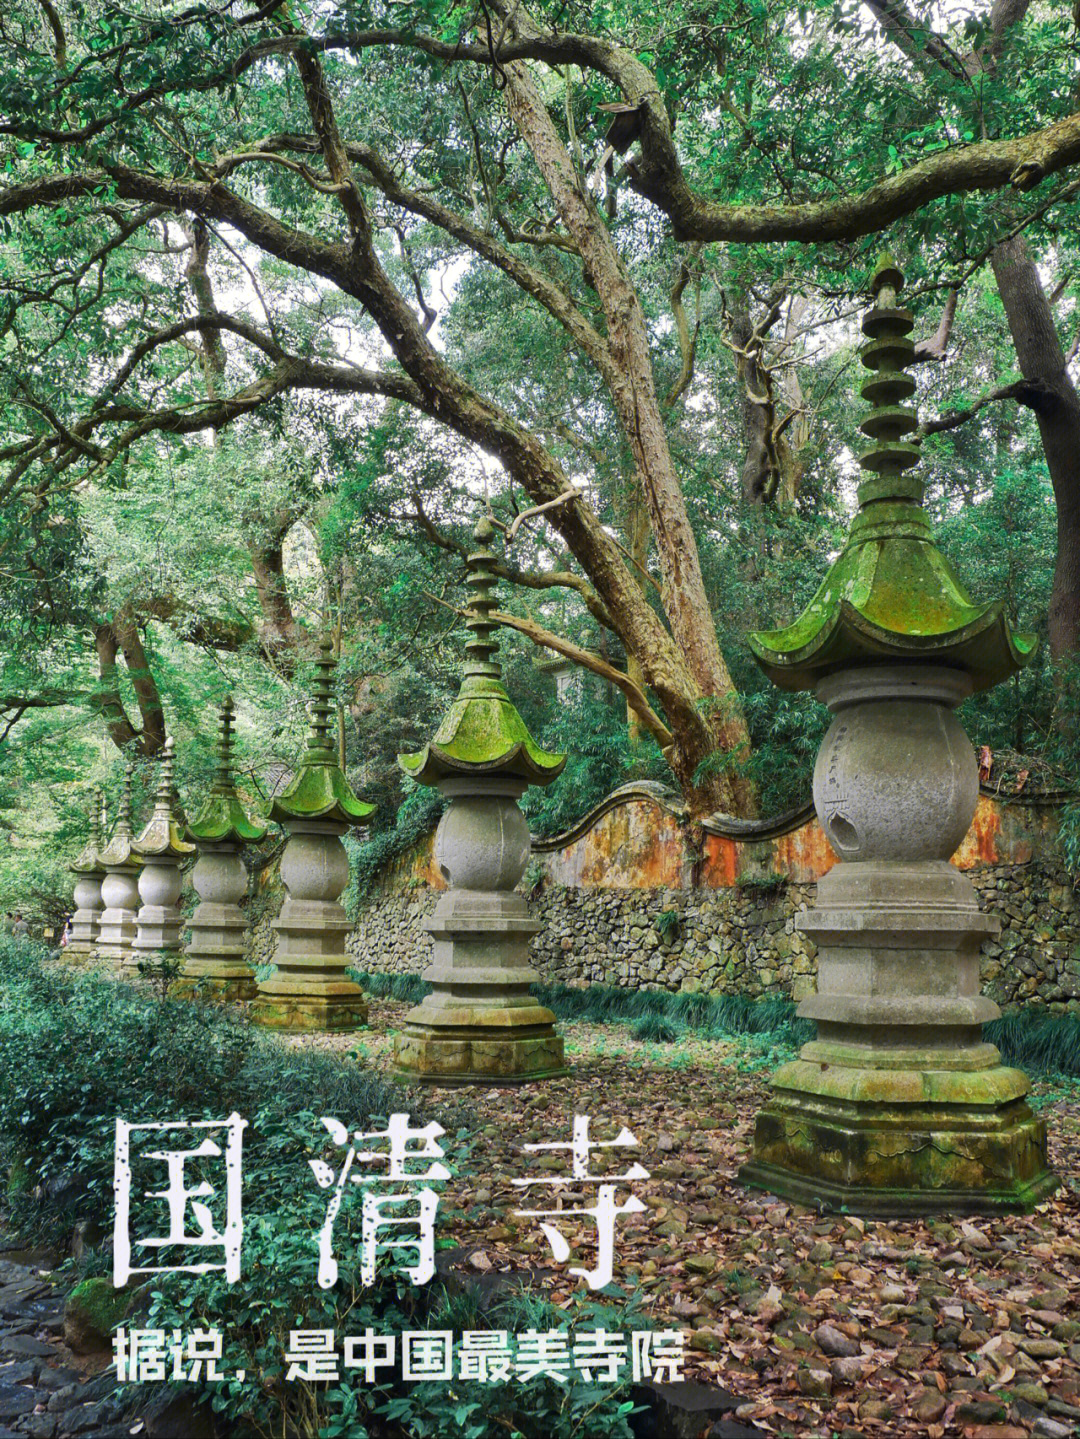 台州国清寺据说是全国最美最清净寺庙